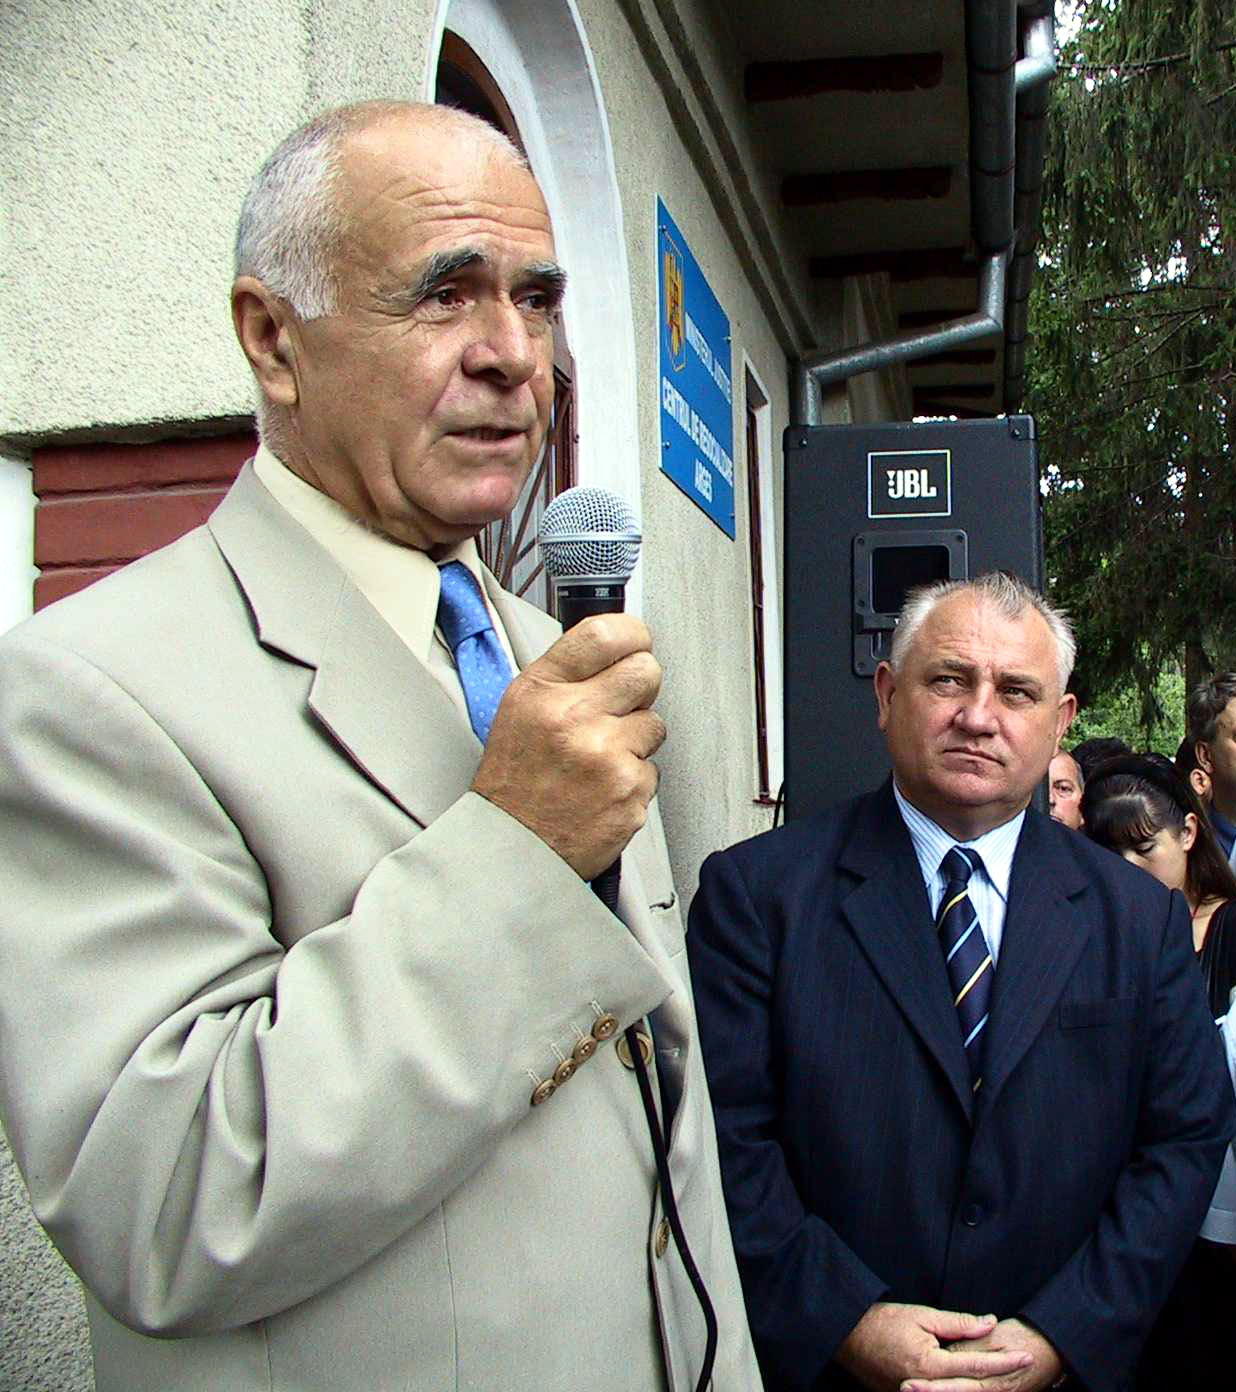 A murit Gheorghe Bălășoiu, omul cu cea mai mare pensie din România